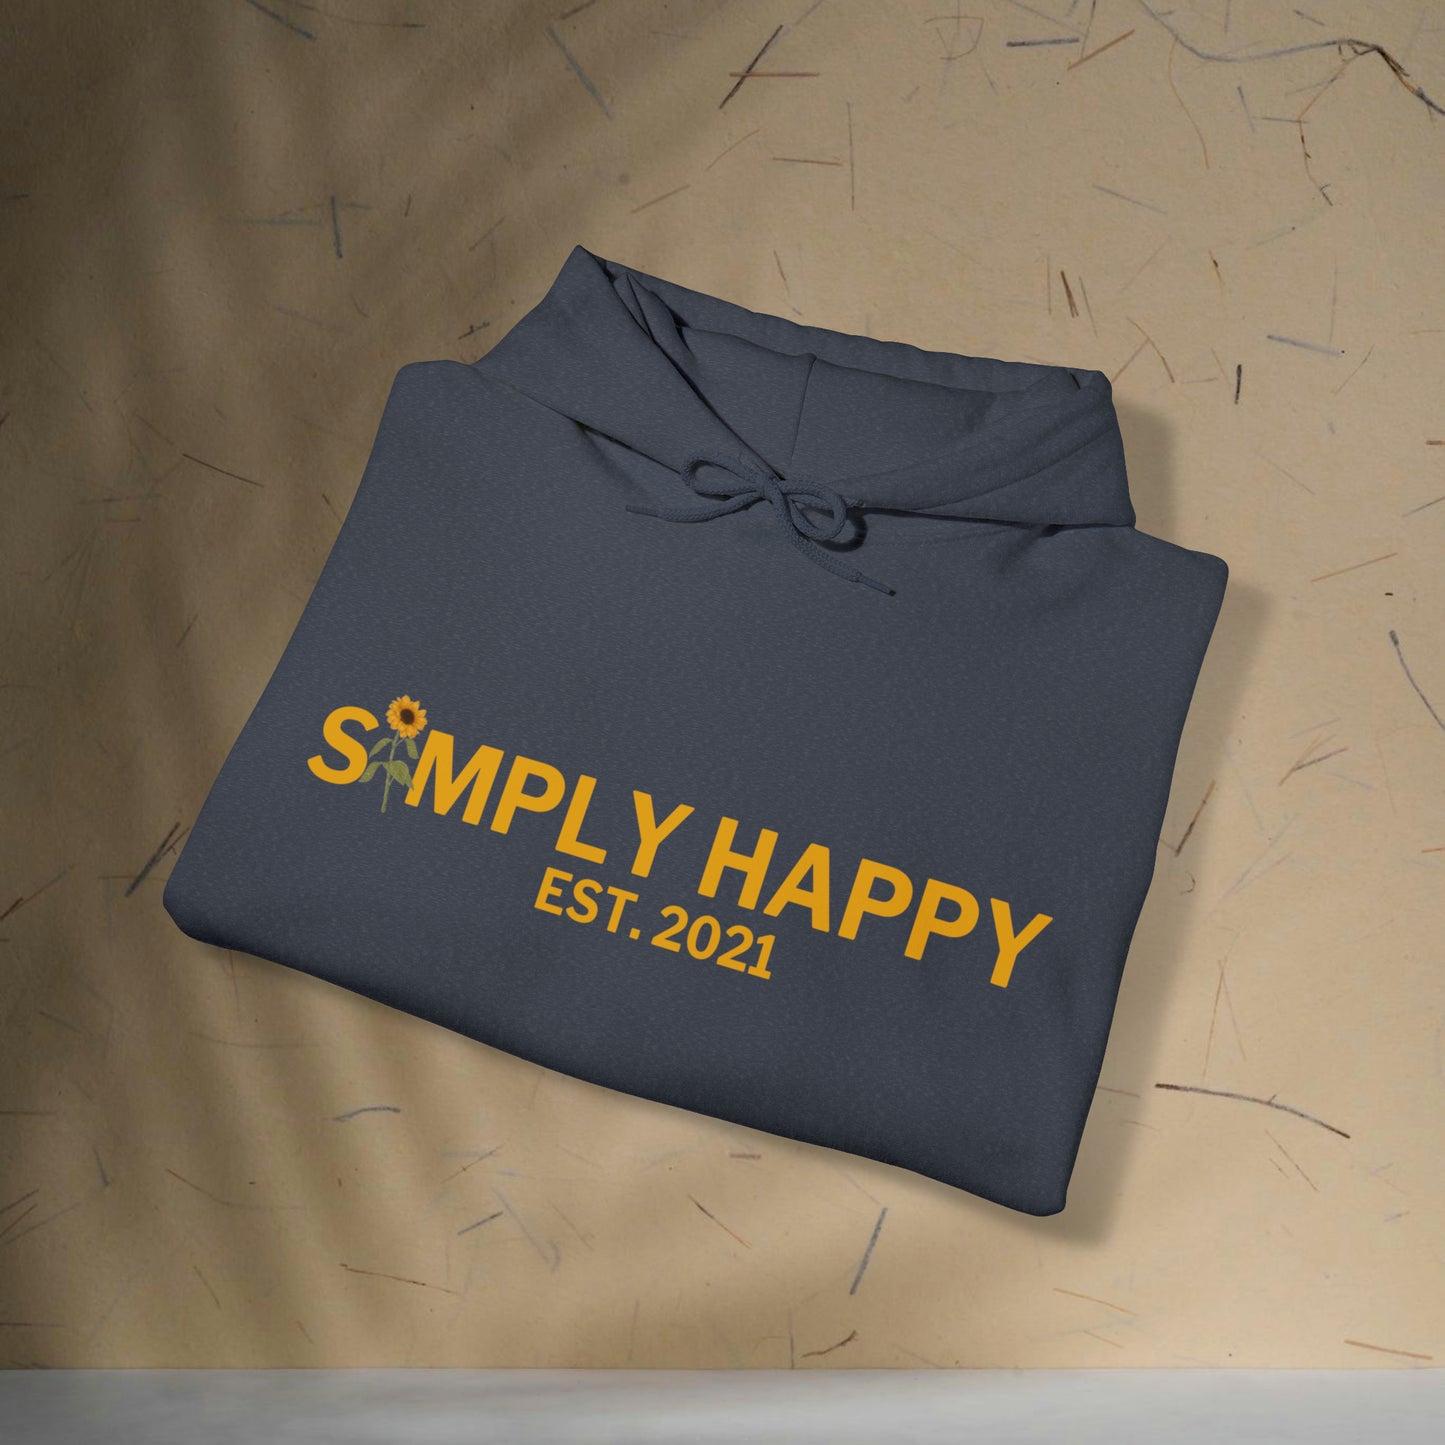 Simply Happy Est. Hoodie